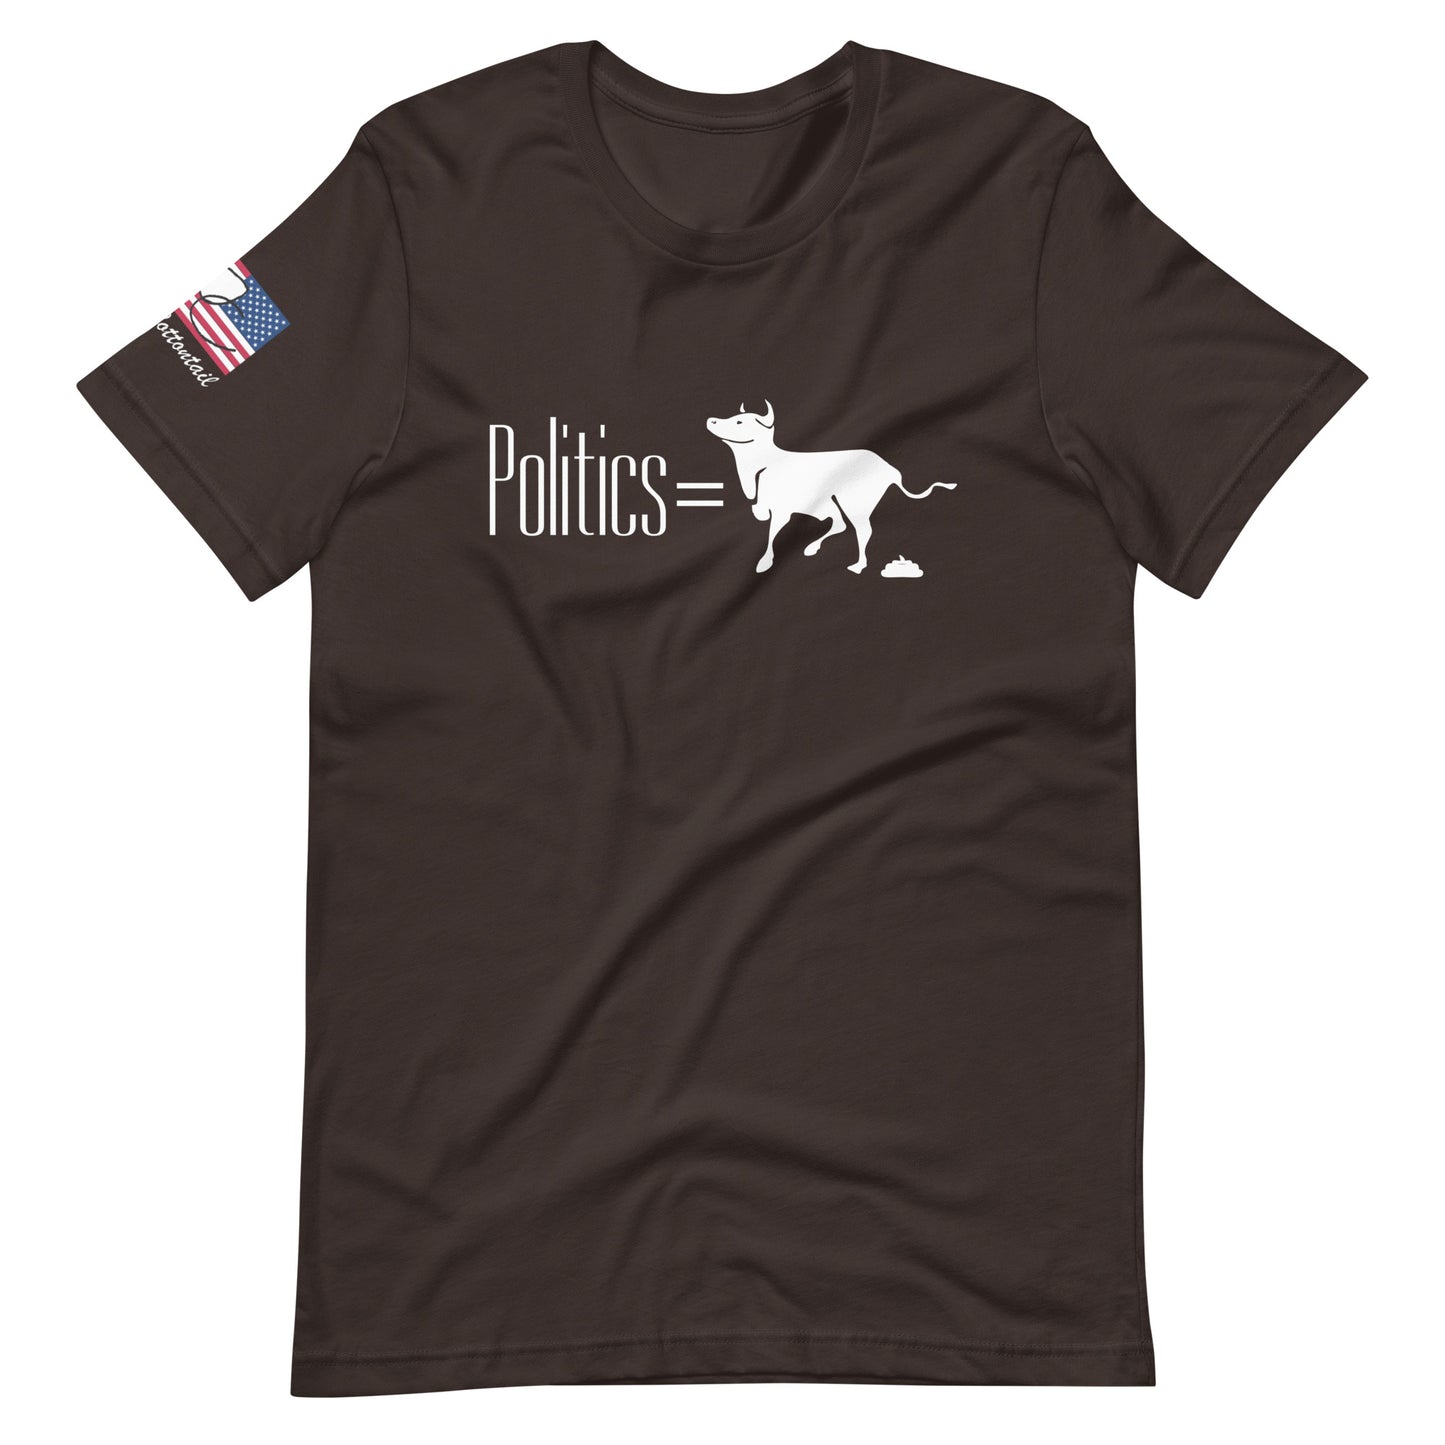 Politics equals BULLSHIT Unisex t-shirt